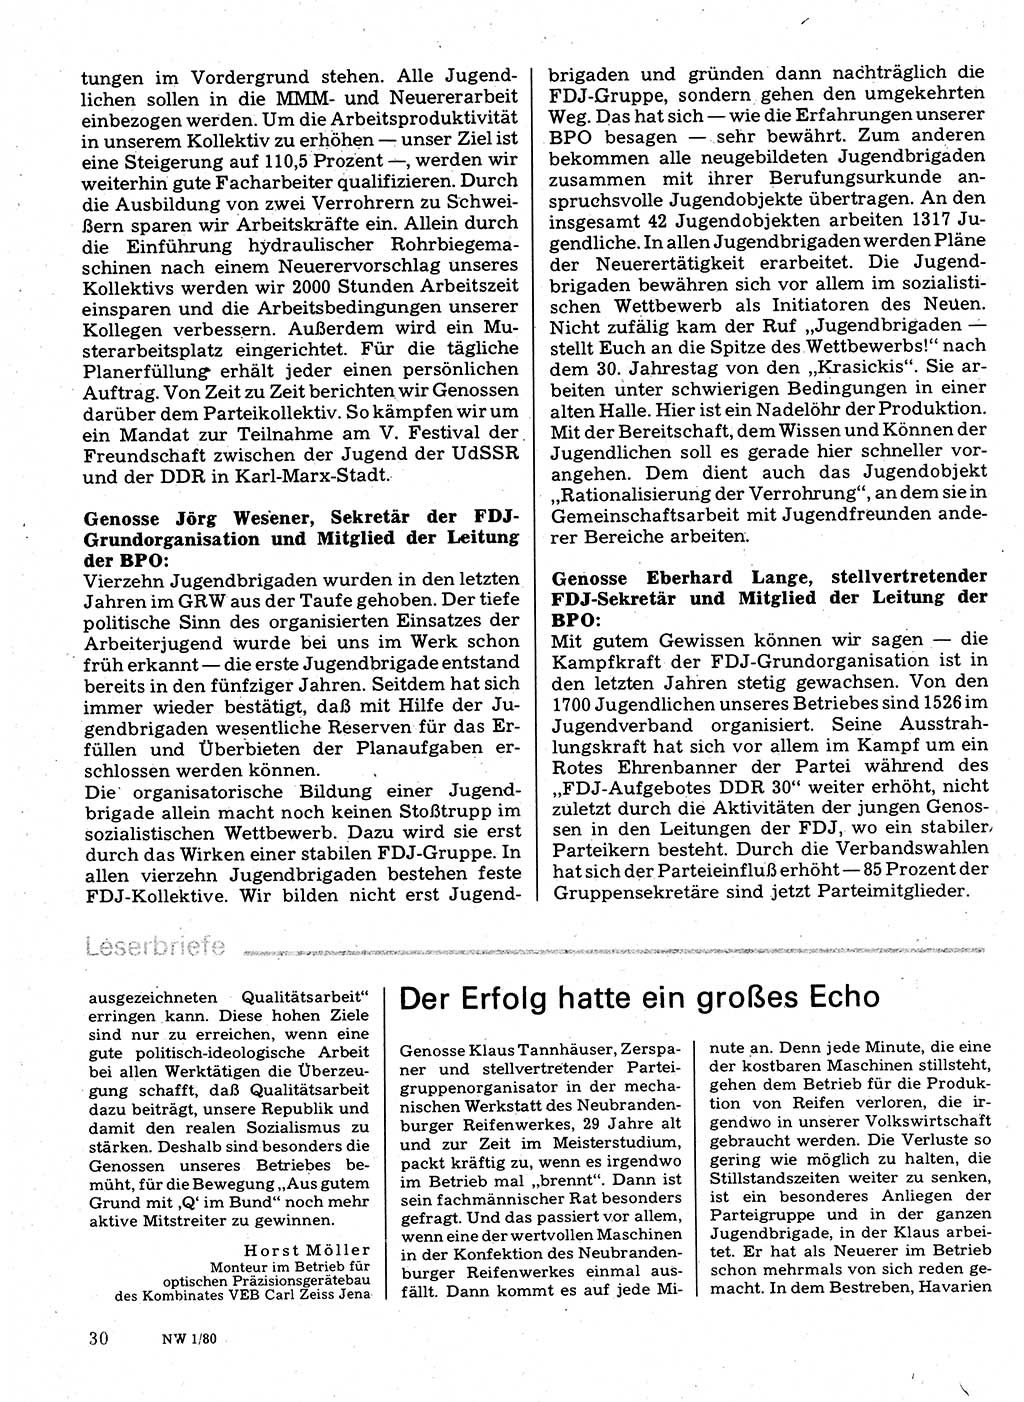 Neuer Weg (NW), Organ des Zentralkomitees (ZK) der SED (Sozialistische Einheitspartei Deutschlands) für Fragen des Parteilebens, 35. Jahrgang [Deutsche Demokratische Republik (DDR)] 1980, Seite 30 (NW ZK SED DDR 1980, S. 30)